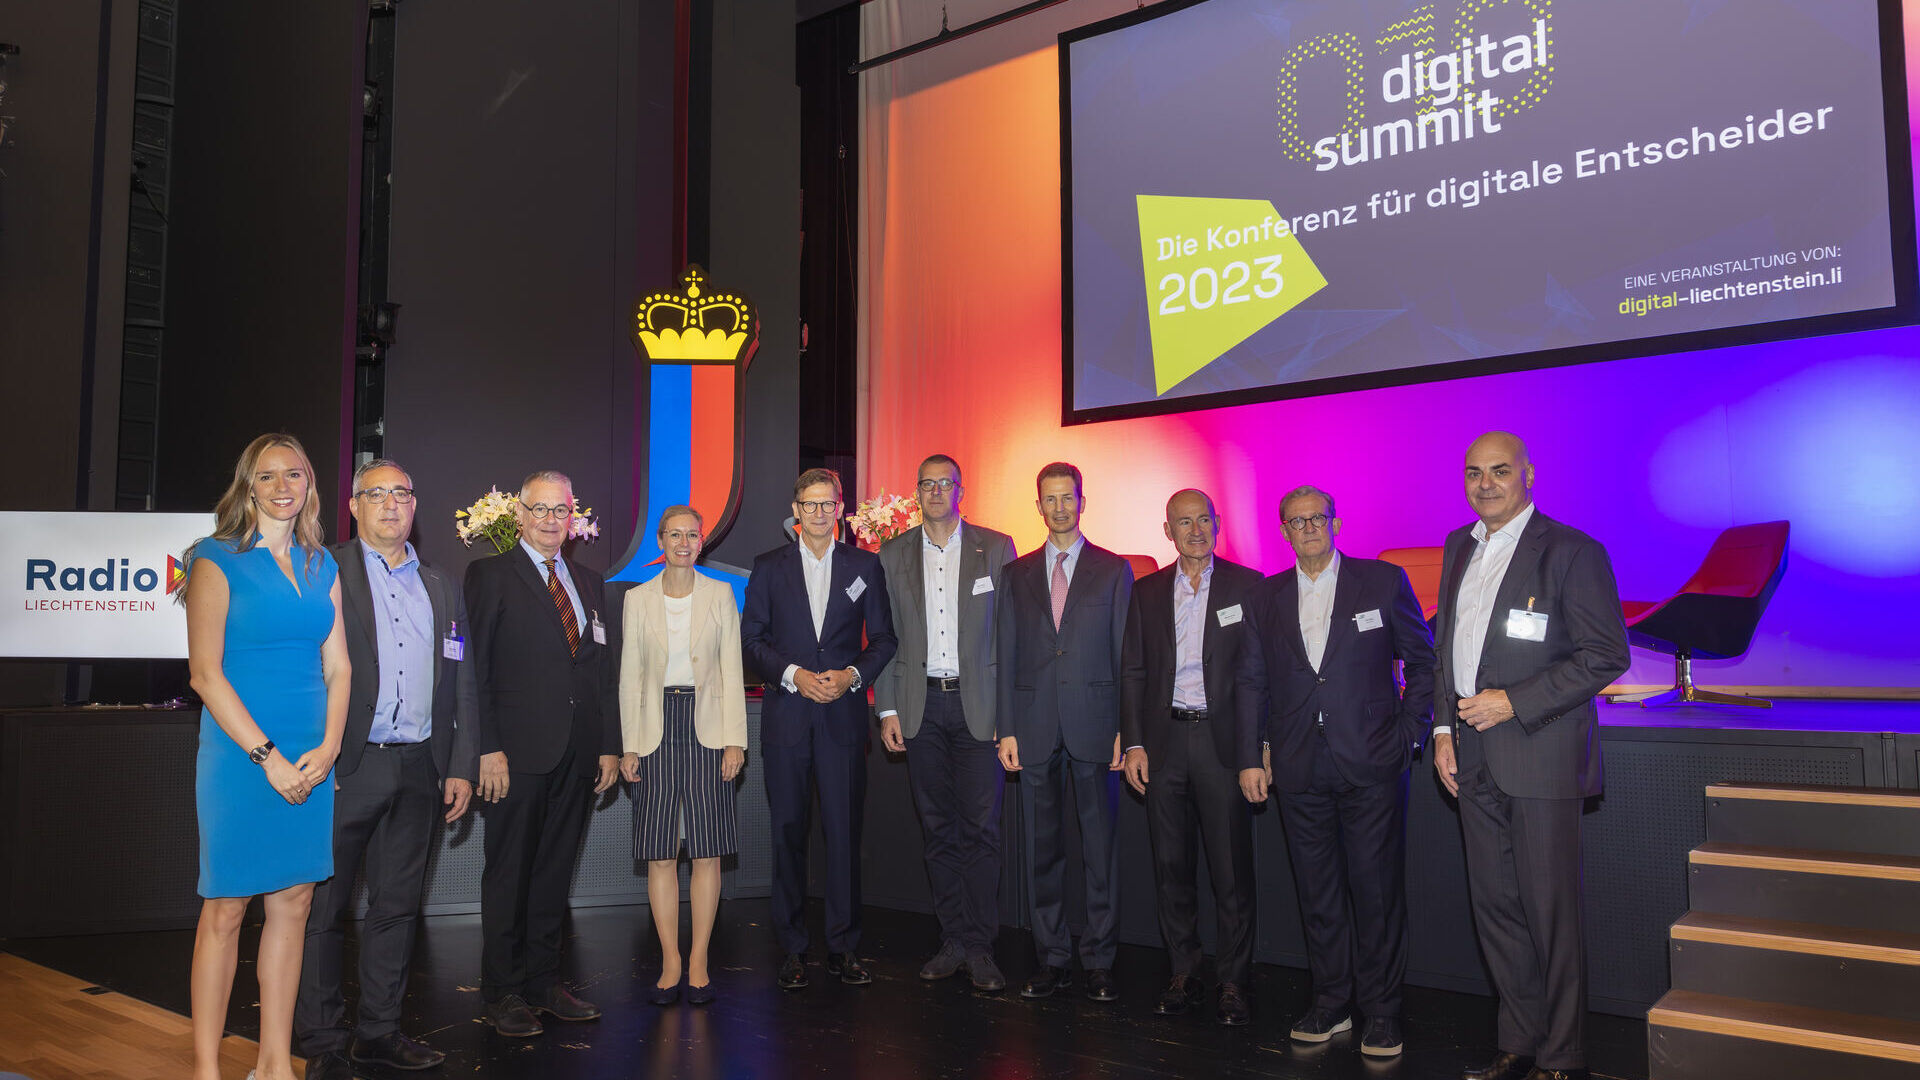 Digital Summit 2023: ban tổ chức và diễn giả